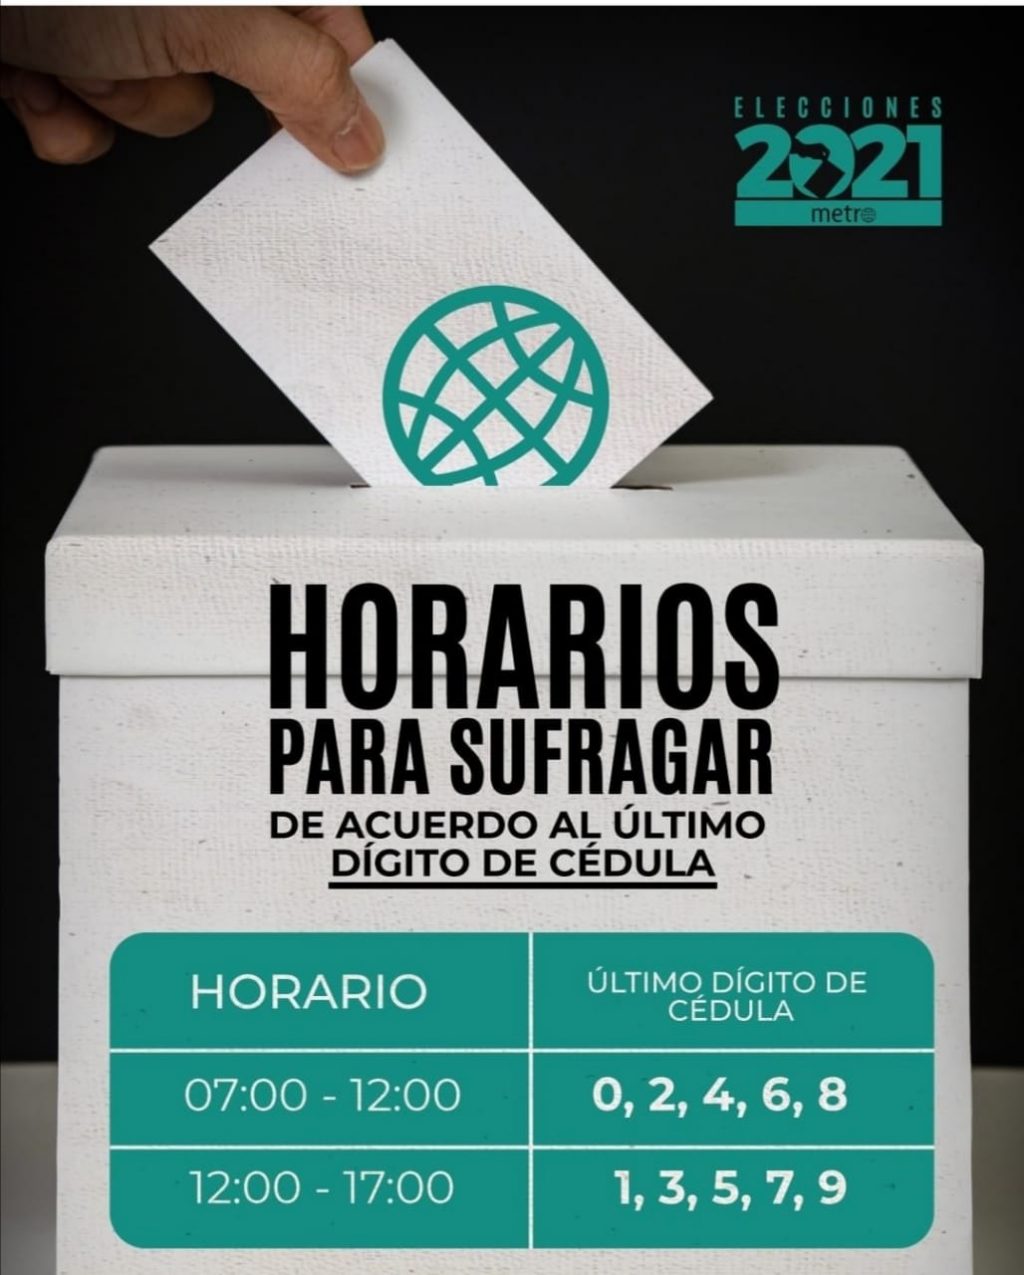 CONSEJONACIONAL ELECTORAL ANUNCIÓ QUE HABRA DOS HORARIOS PARA VOTACIONES. 1